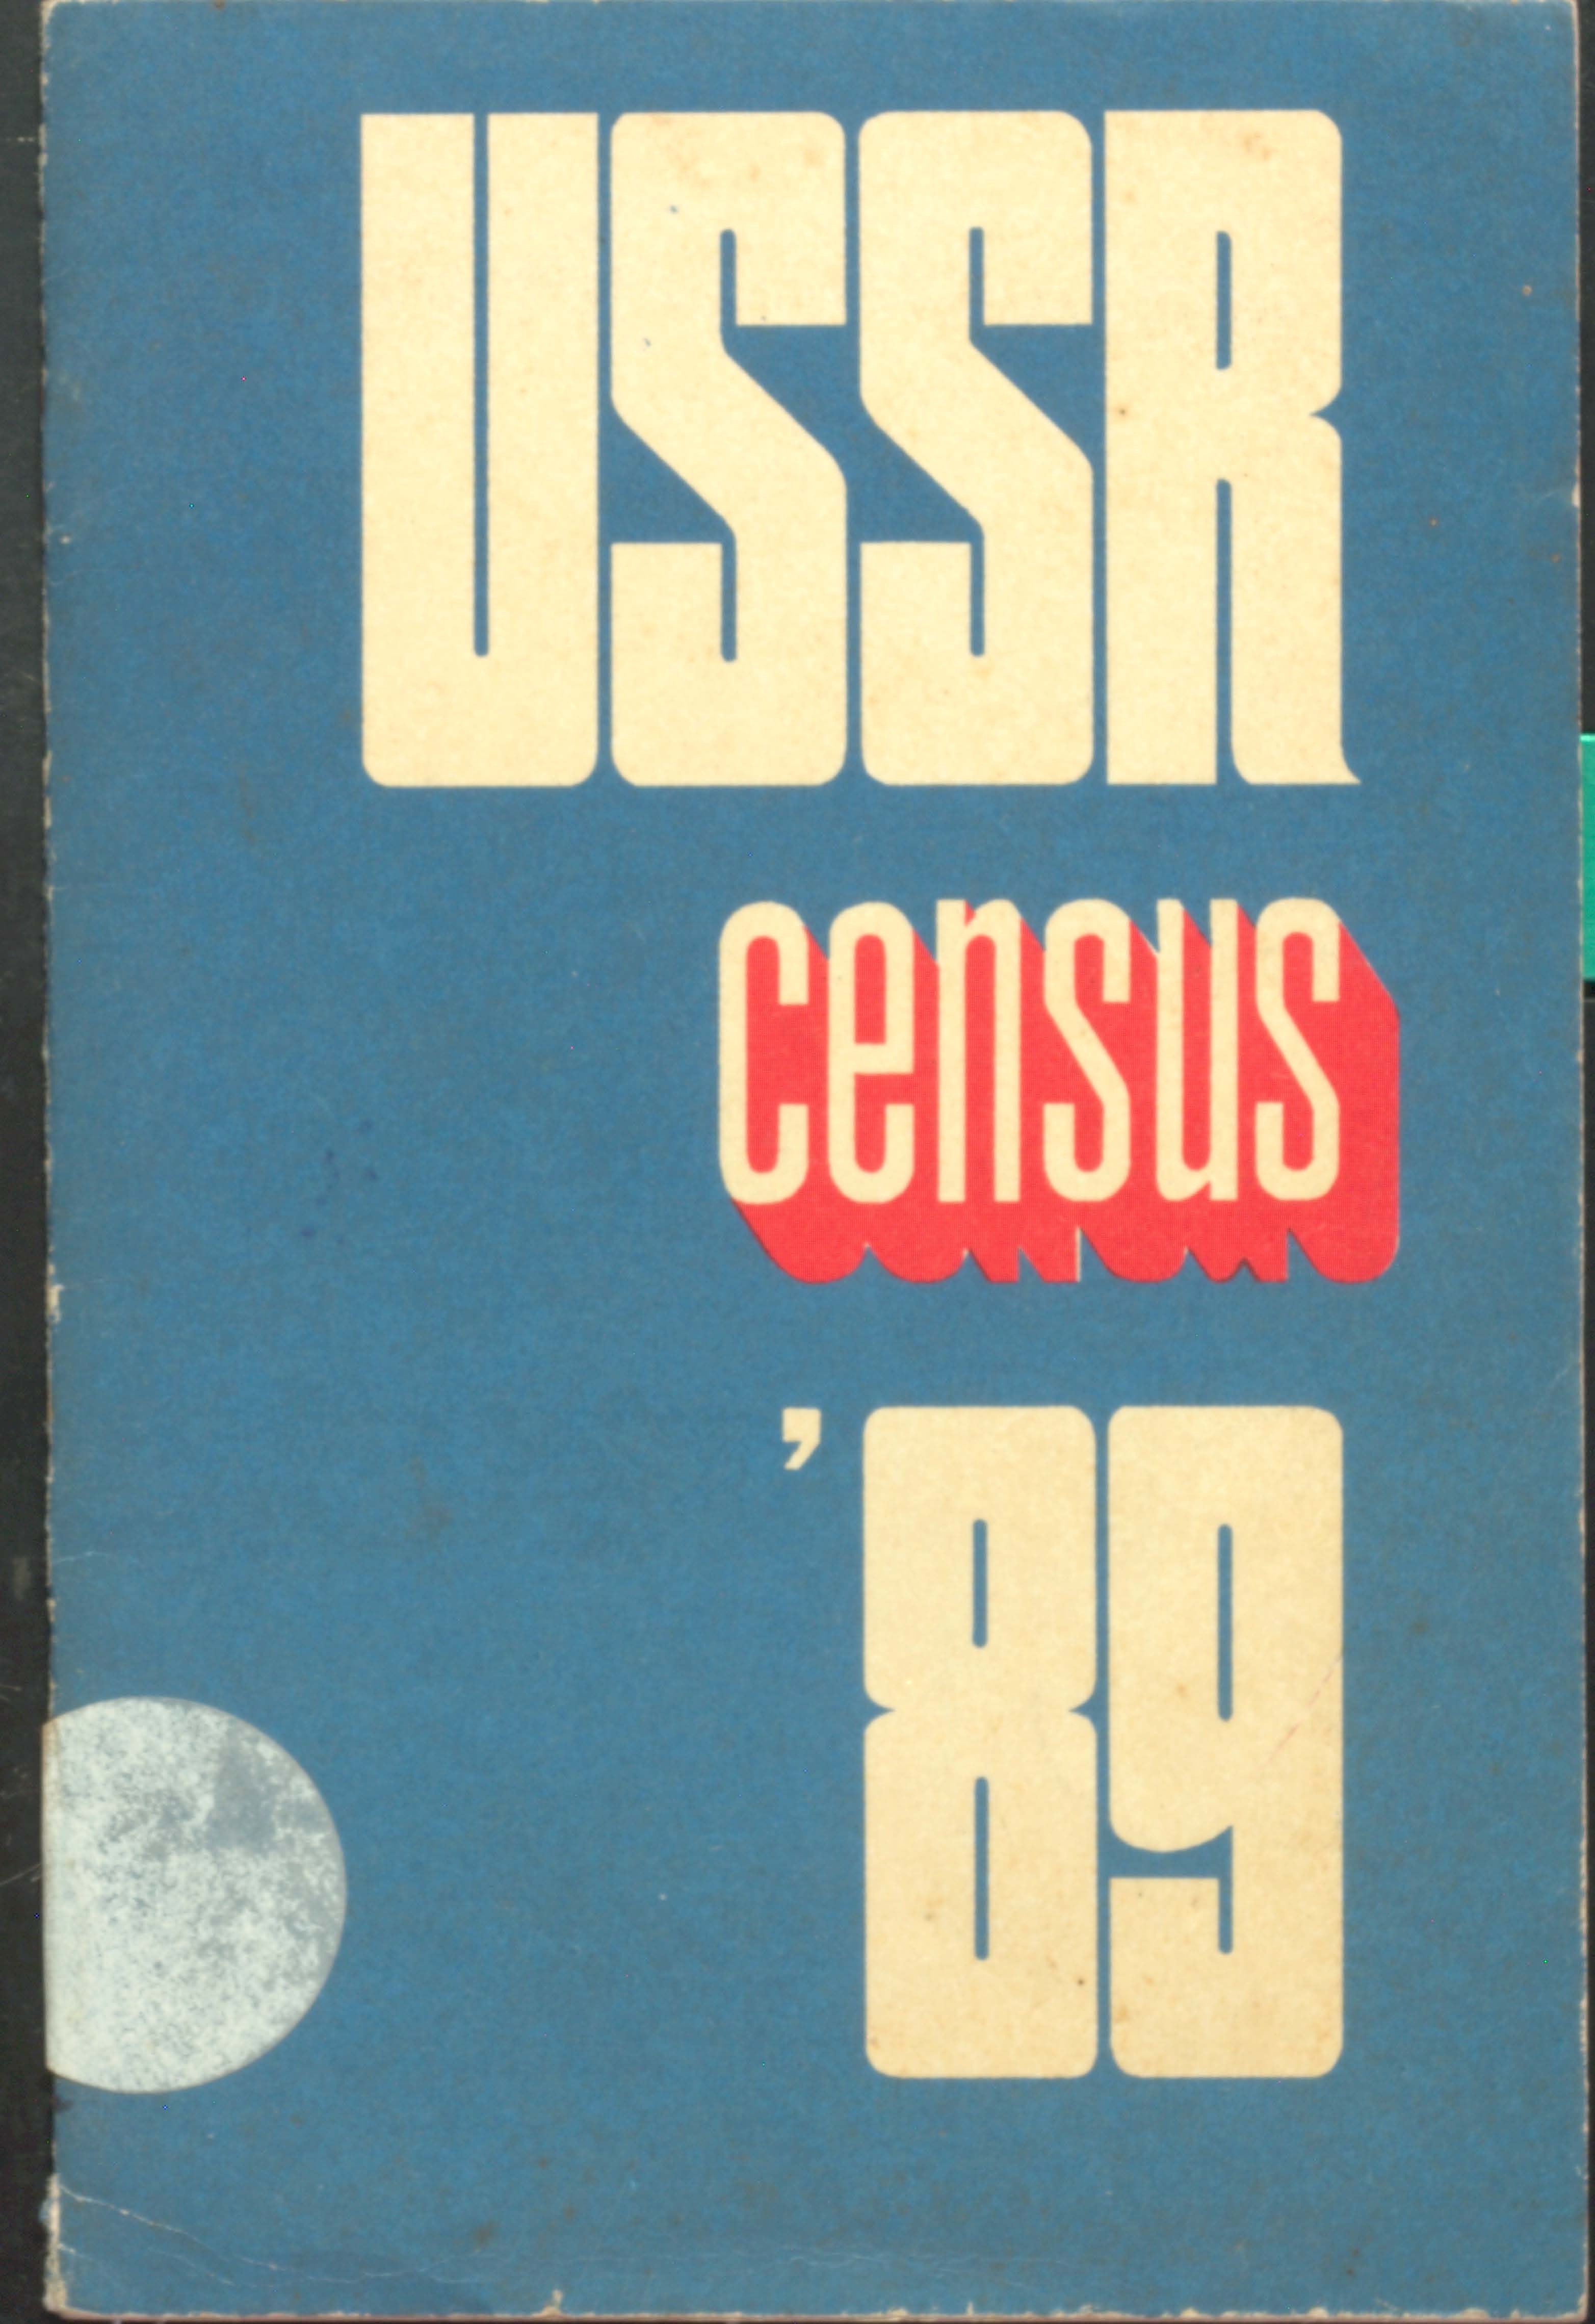 USSR census'89